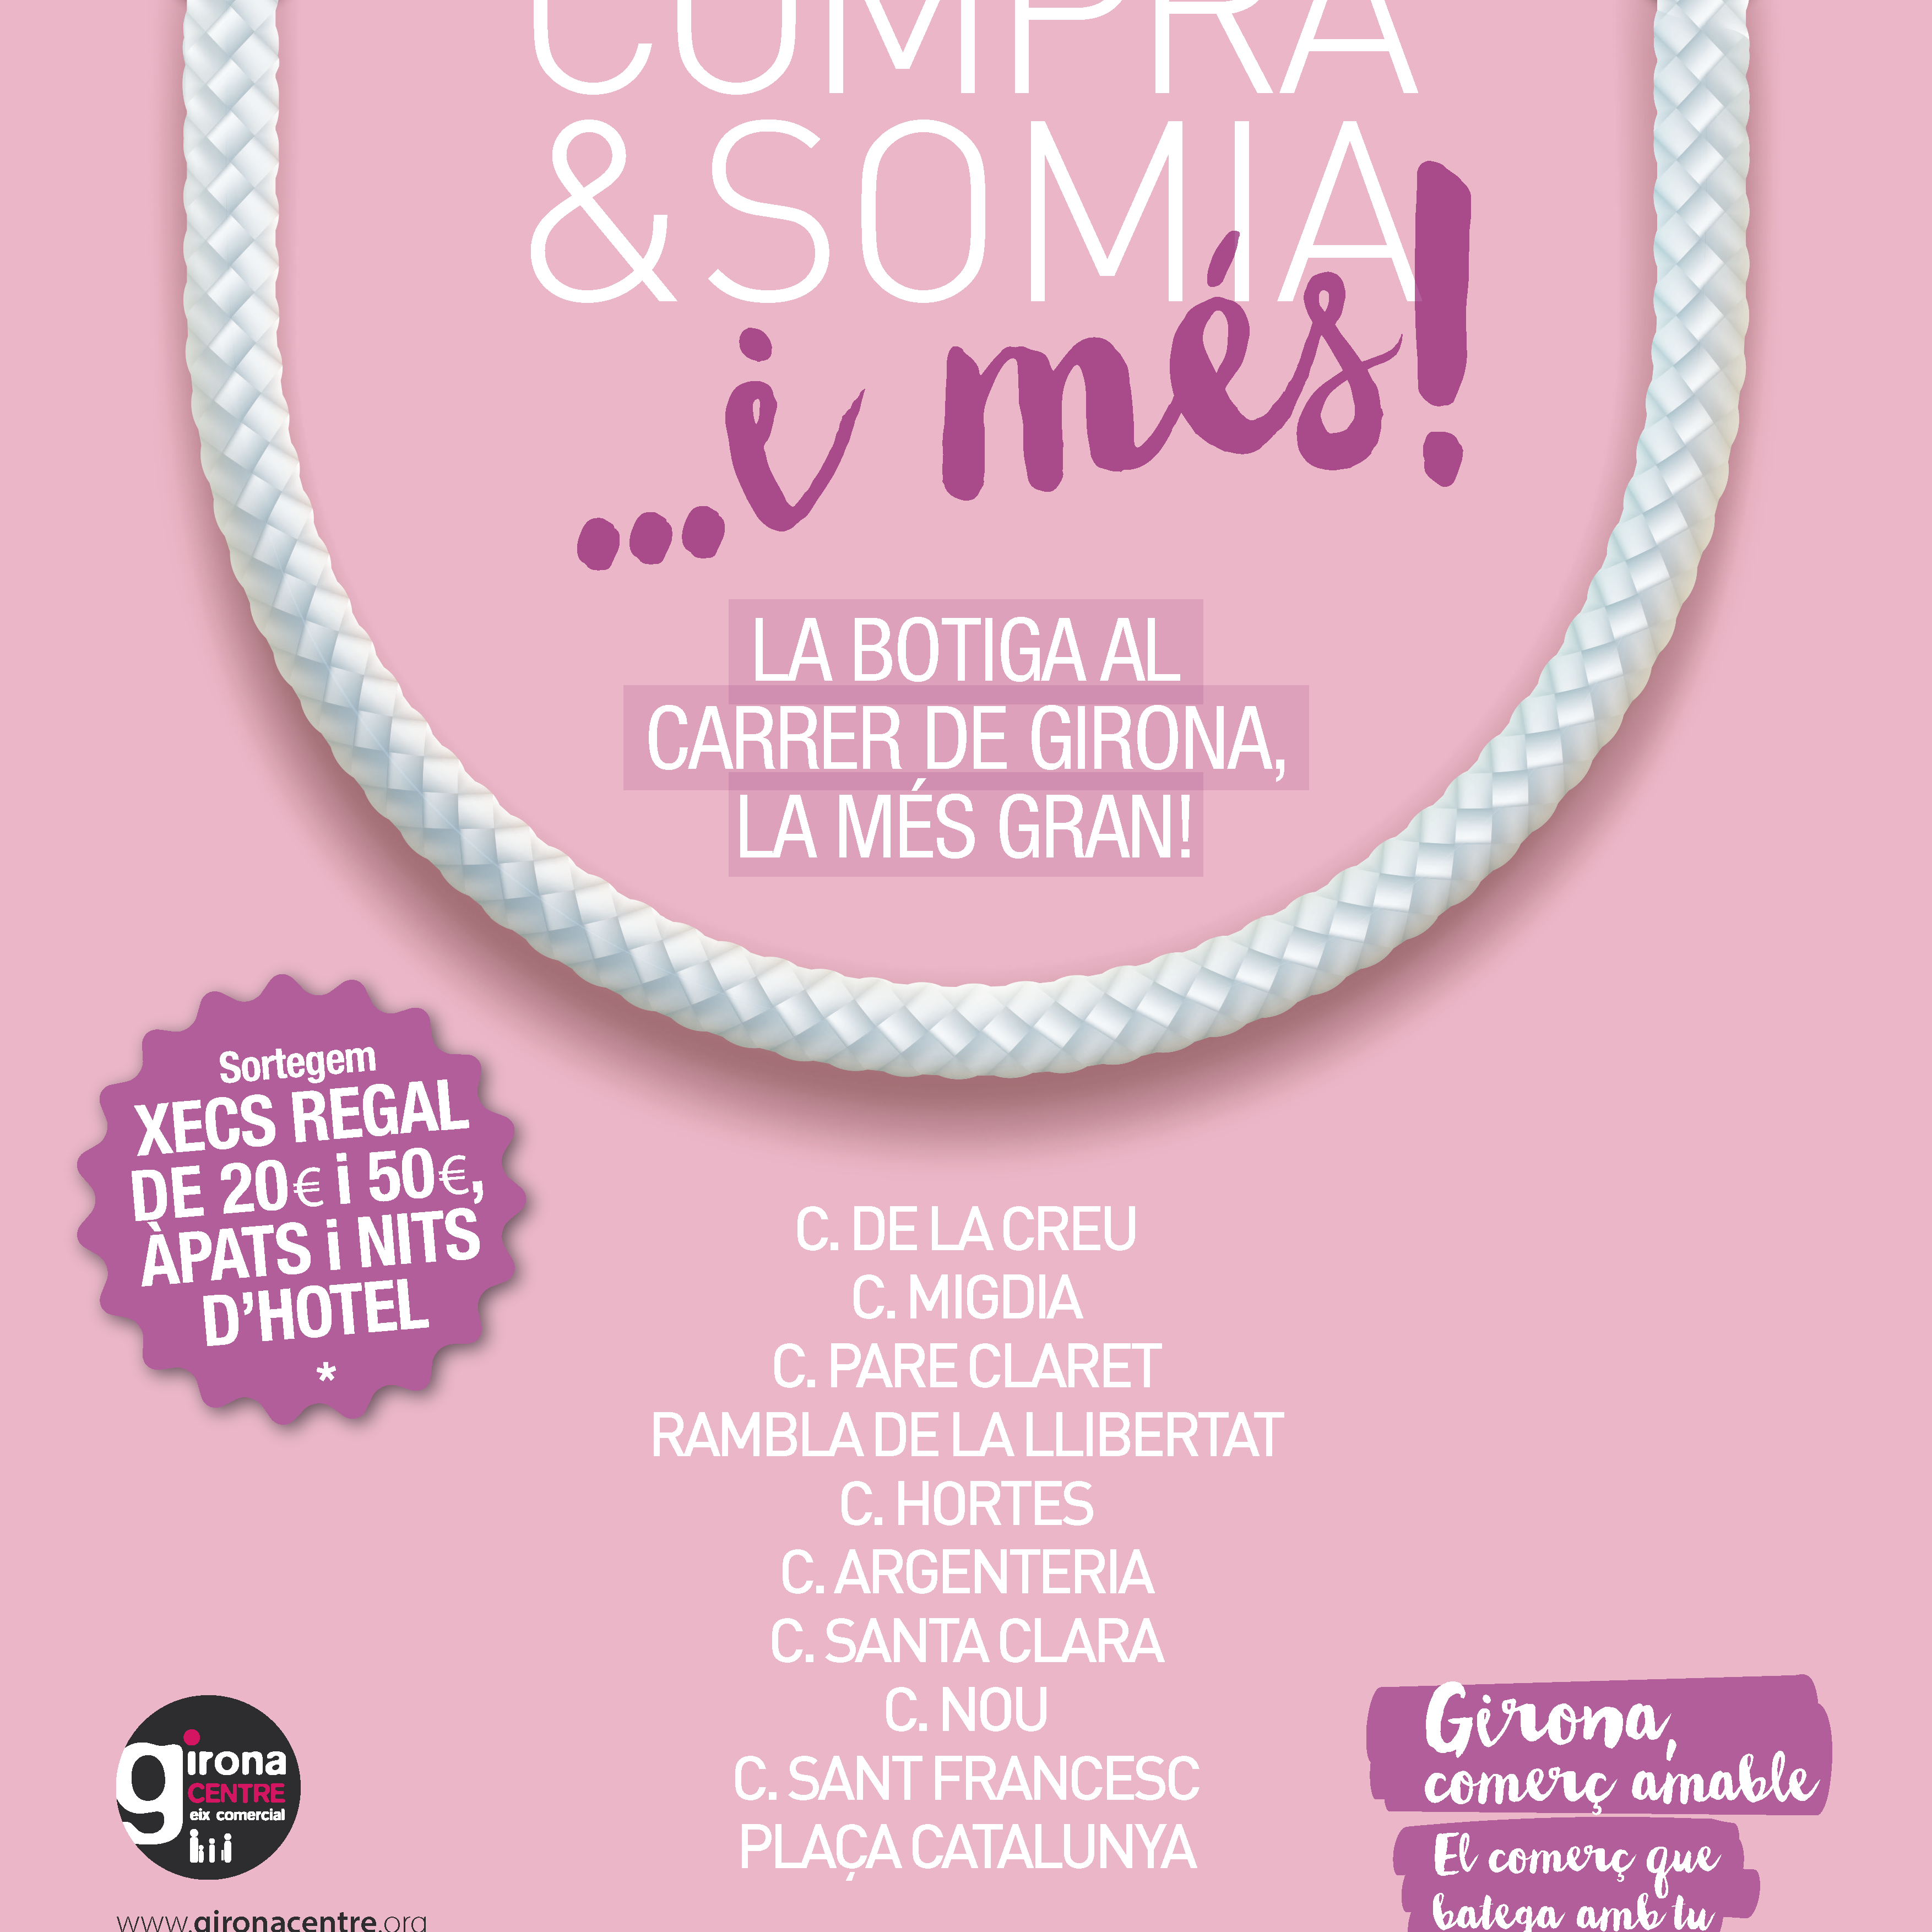 Dissabte 30 de setembre, a Girona: Compra & Somia, la botiga al carrer més gran de la ciutat